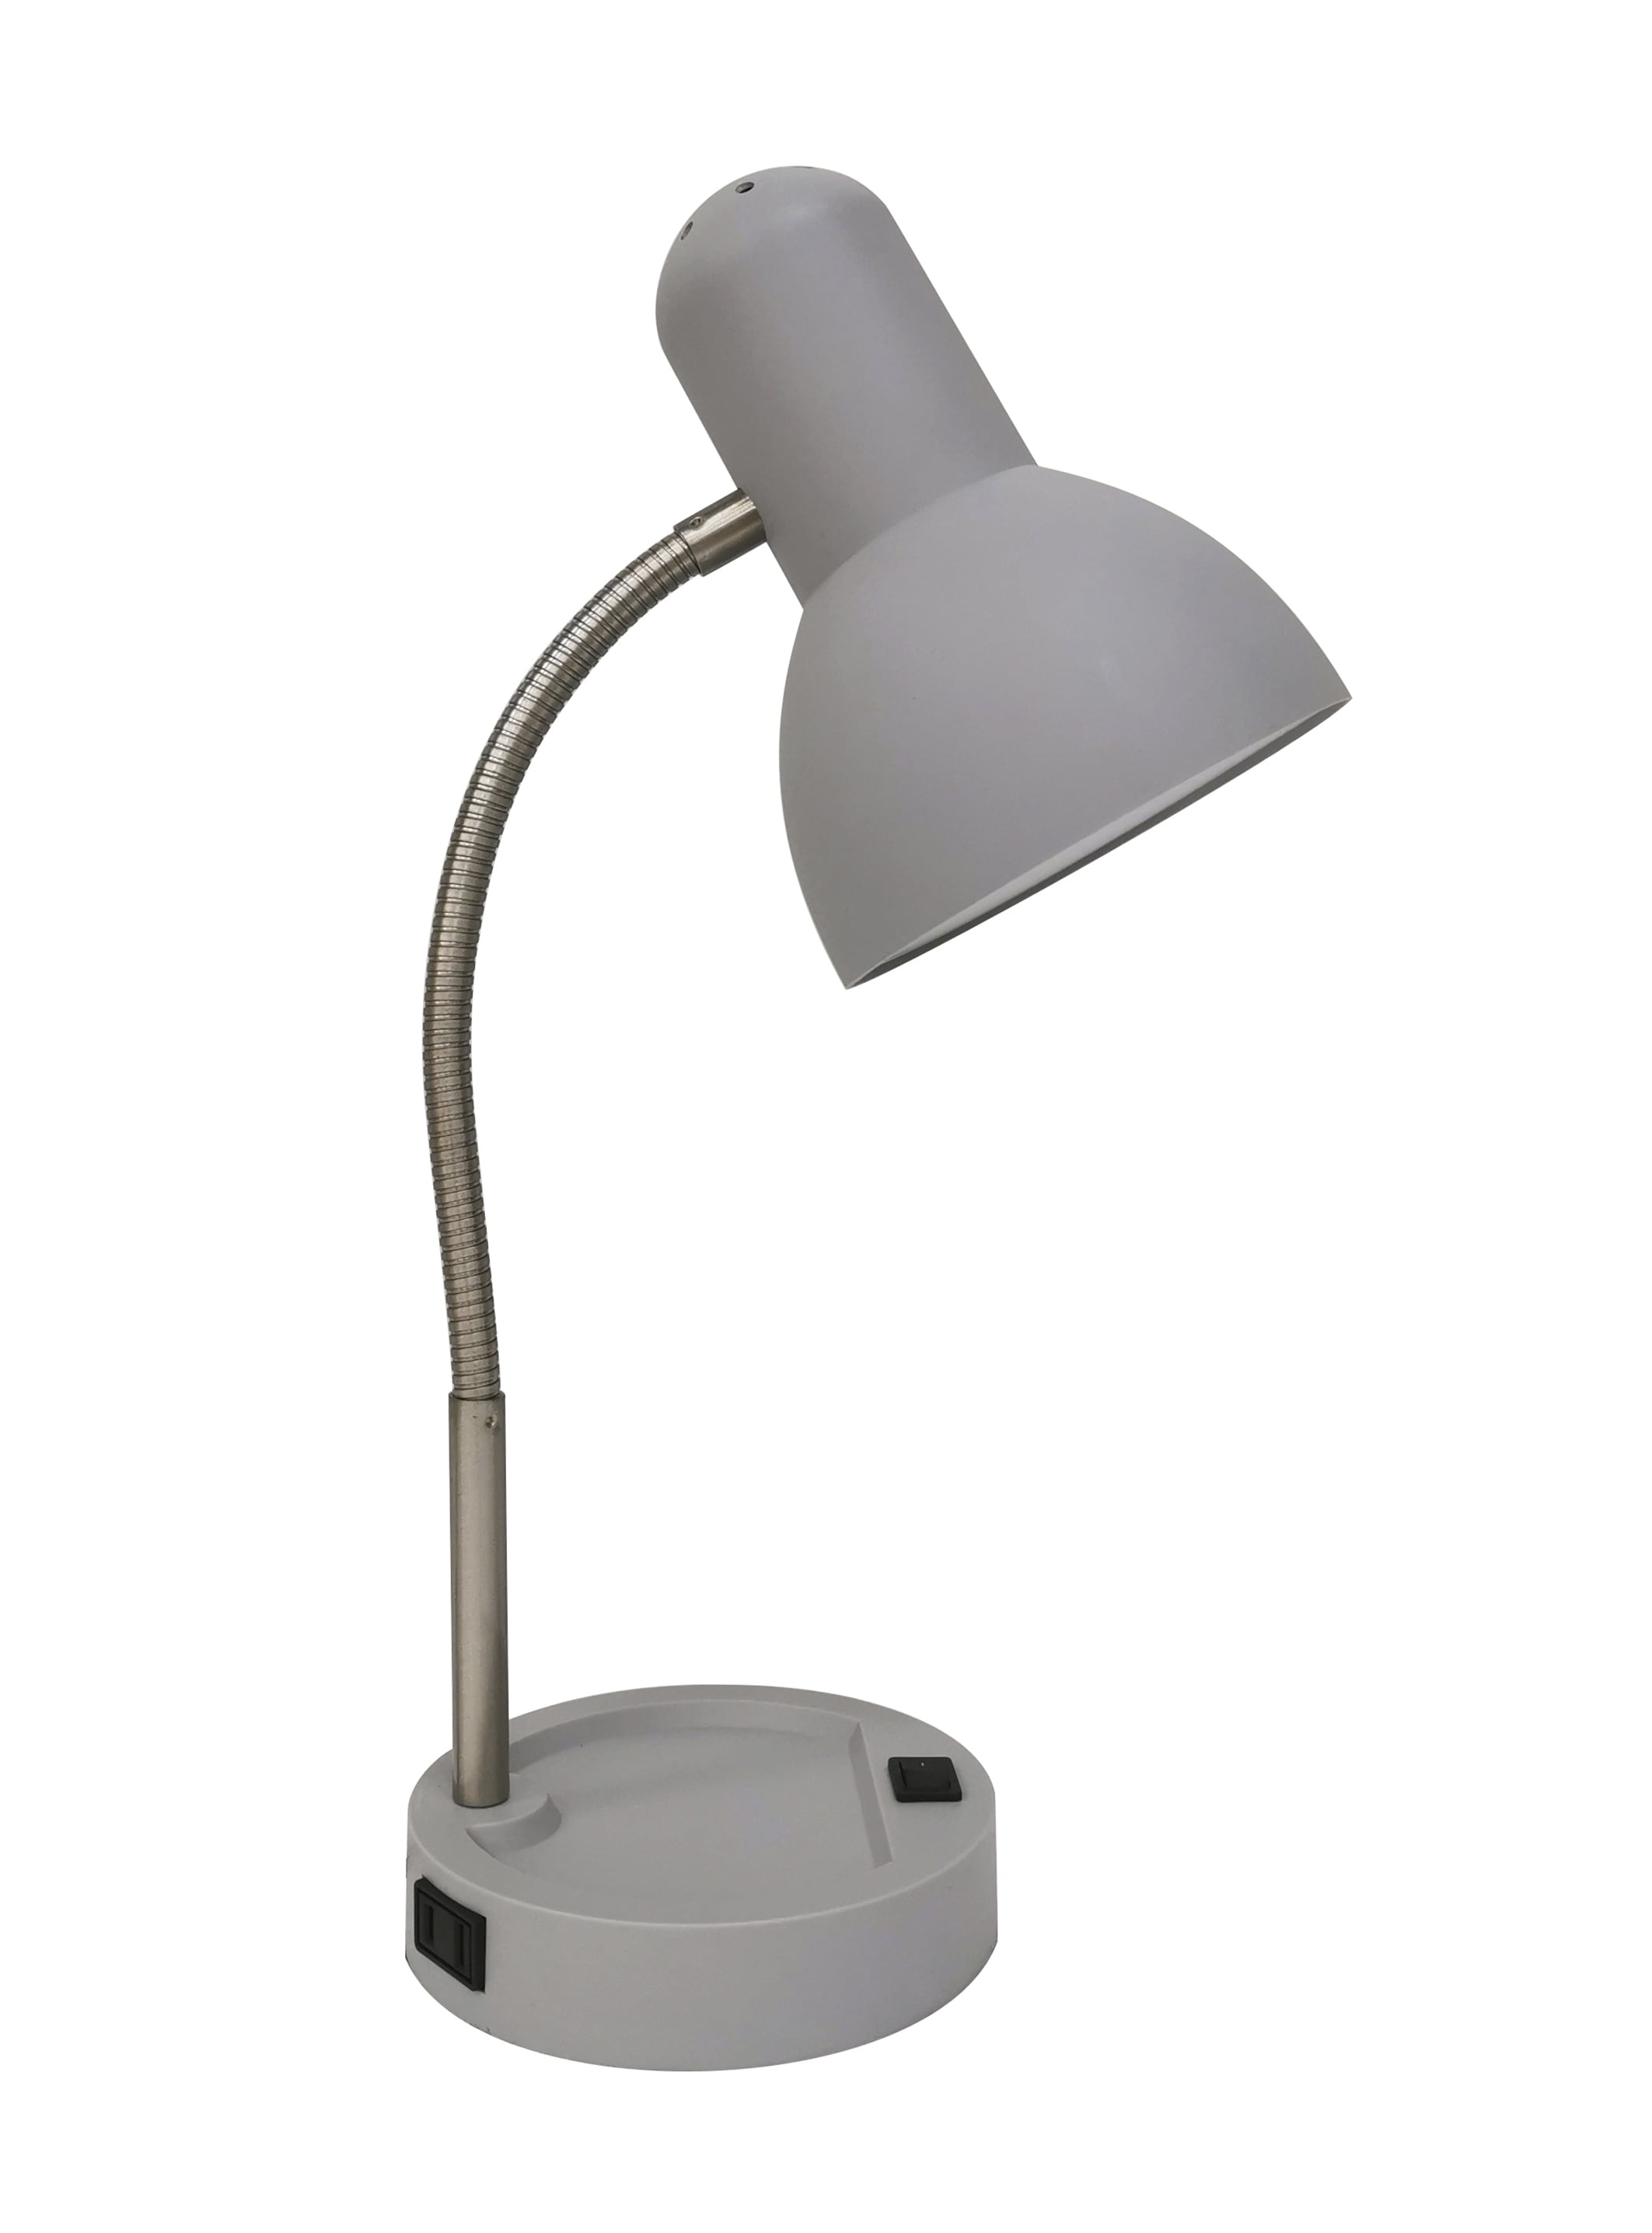 Gold Desk Lamp Mainstays LED Table Desk Nightstand Dorm Student Light Flexible 